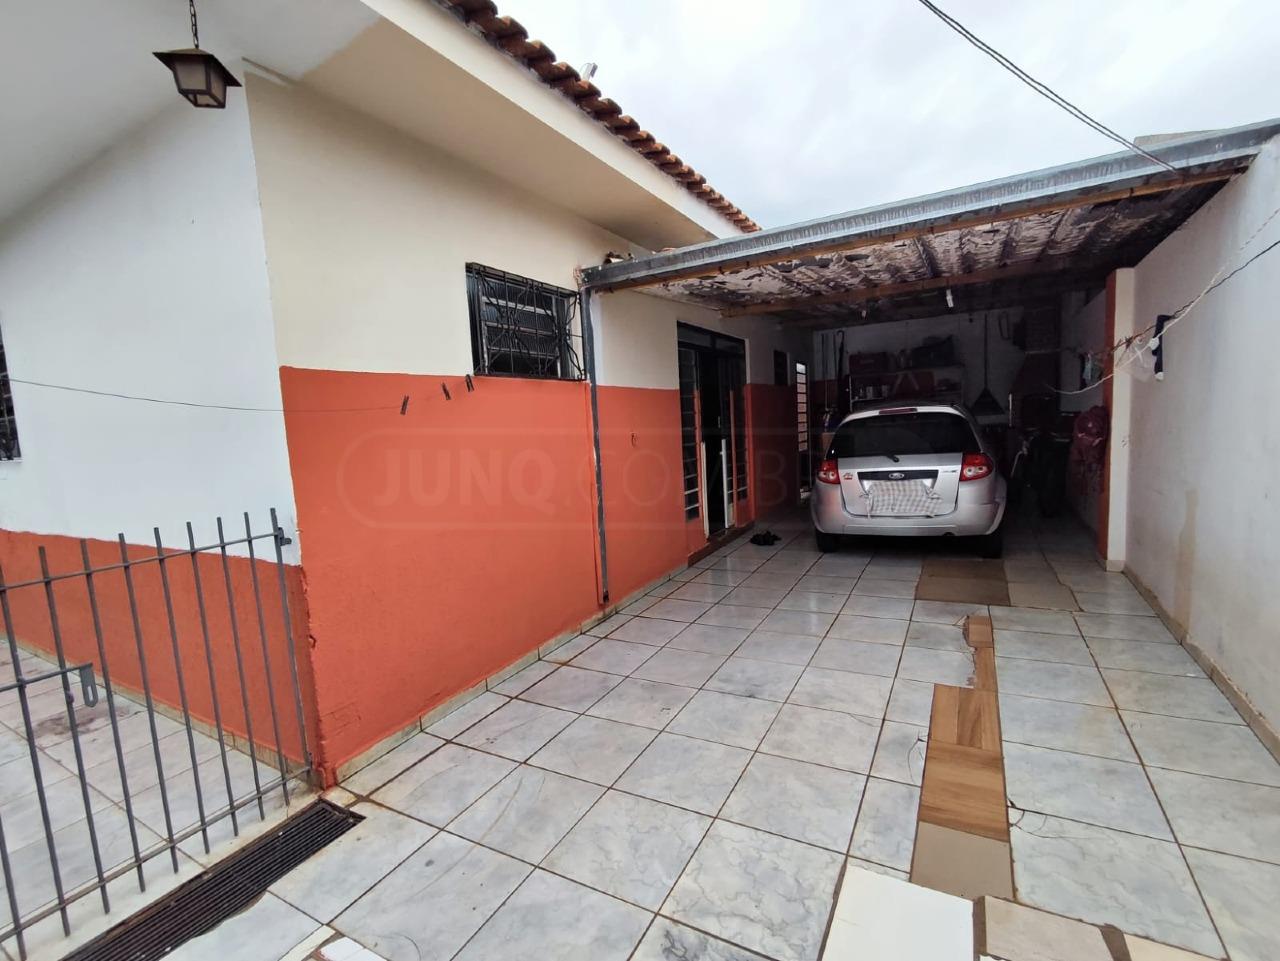 Casa à venda, 3 quartos, sendo 1 suíte, 2 vagas, no bairro Jardim São Cristóvão I em Rio das Pedras - SP